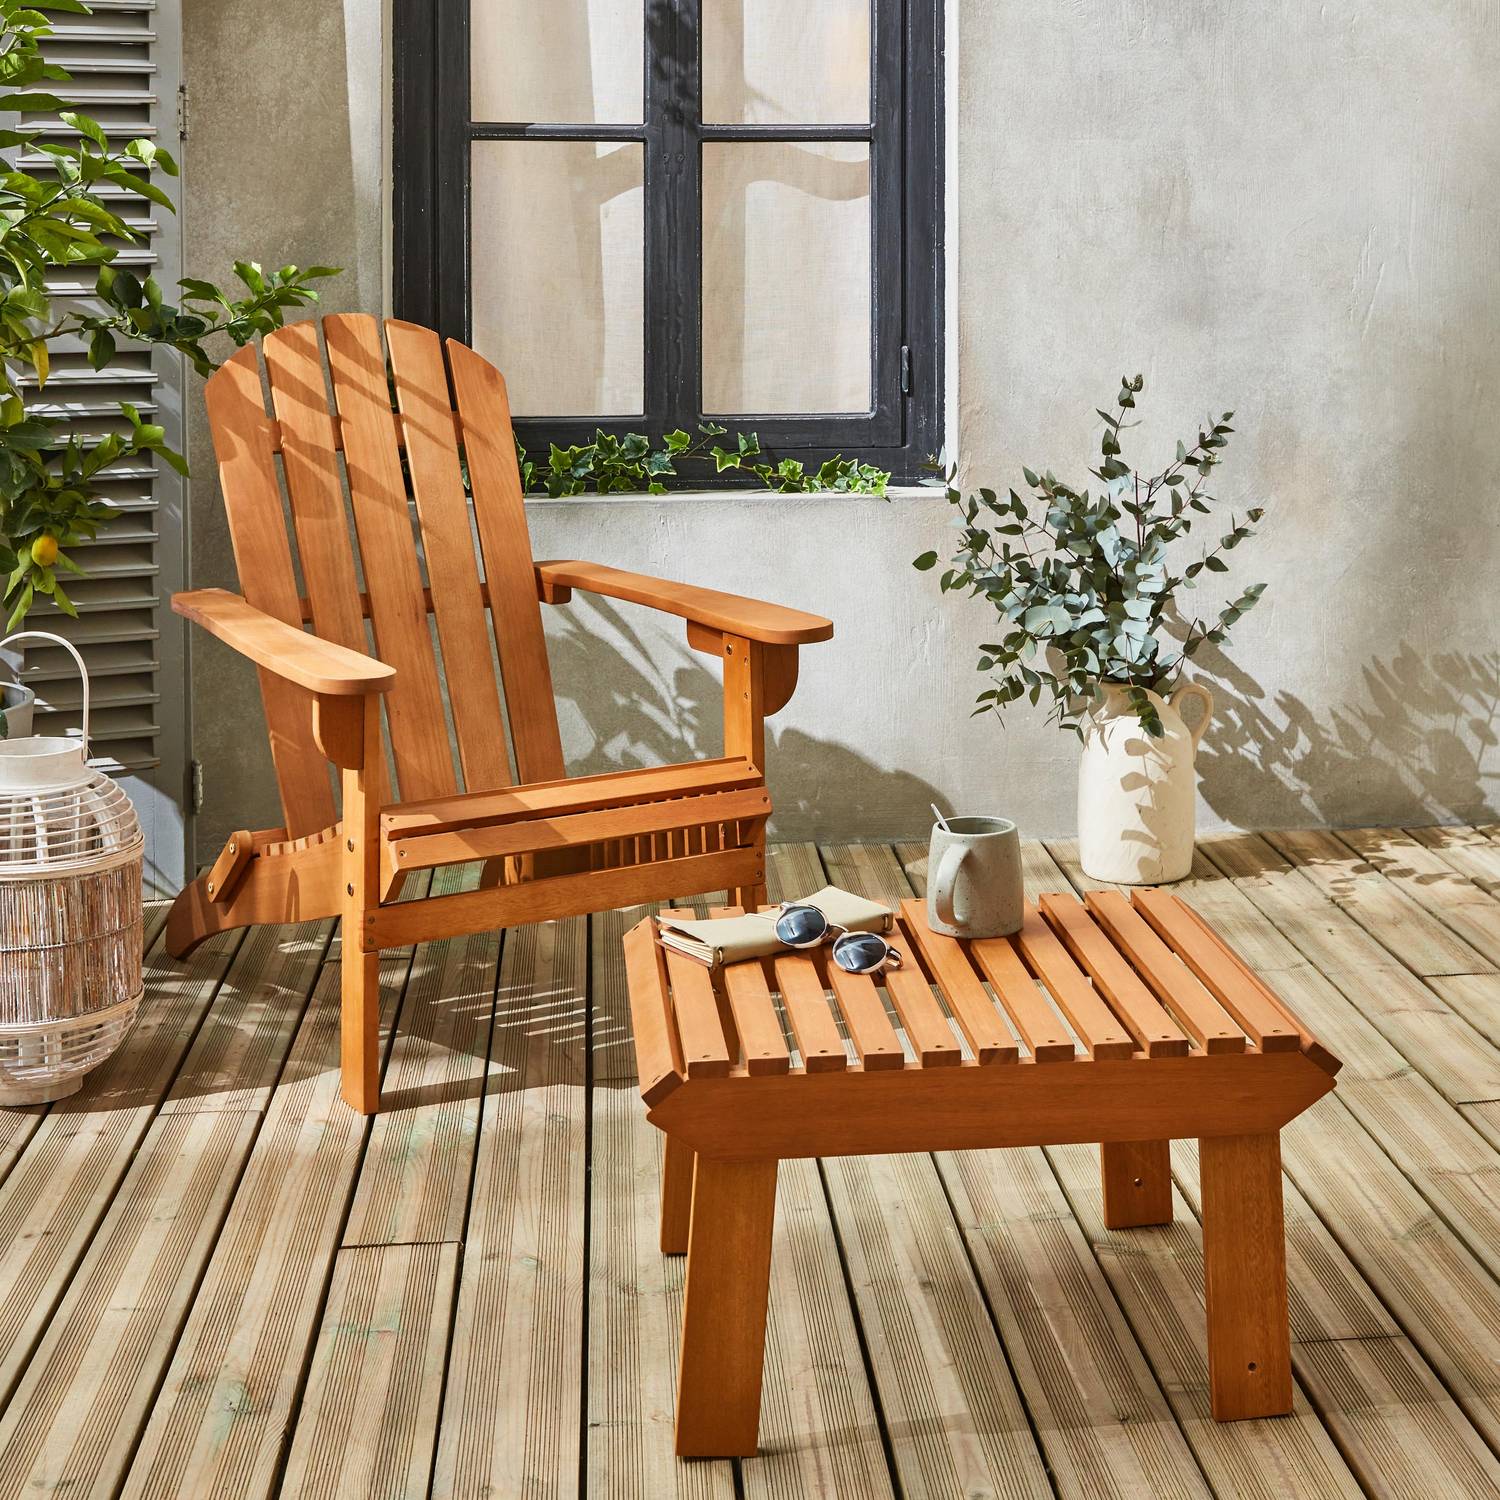 Fauteuil de jardin en bois avec repose-pieds/table basse - Adirondack Salamanca - Eucalyptus FSC, chaise de terrasse retro Photo1